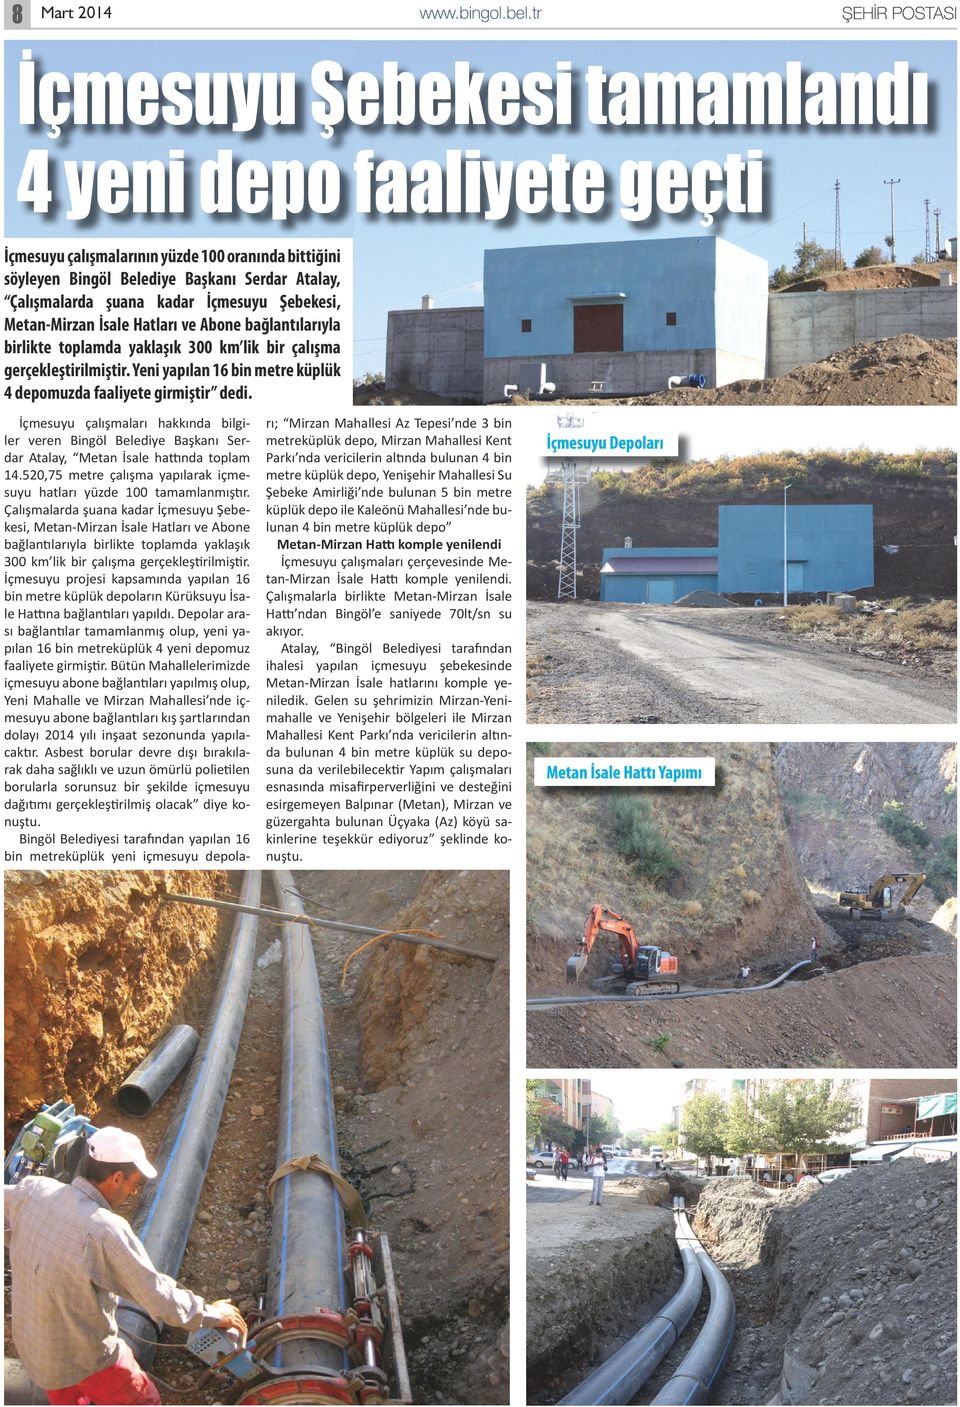 Yeni yapılan 16 bin metre küplük 4 depomuzda faaliyete girmiştir dedi. İçmesuyu çalışmaları hakkında bilgiler veren Bingöl Belediye Başkanı Serdar Atalay, Metan İsale hattında toplam 14.